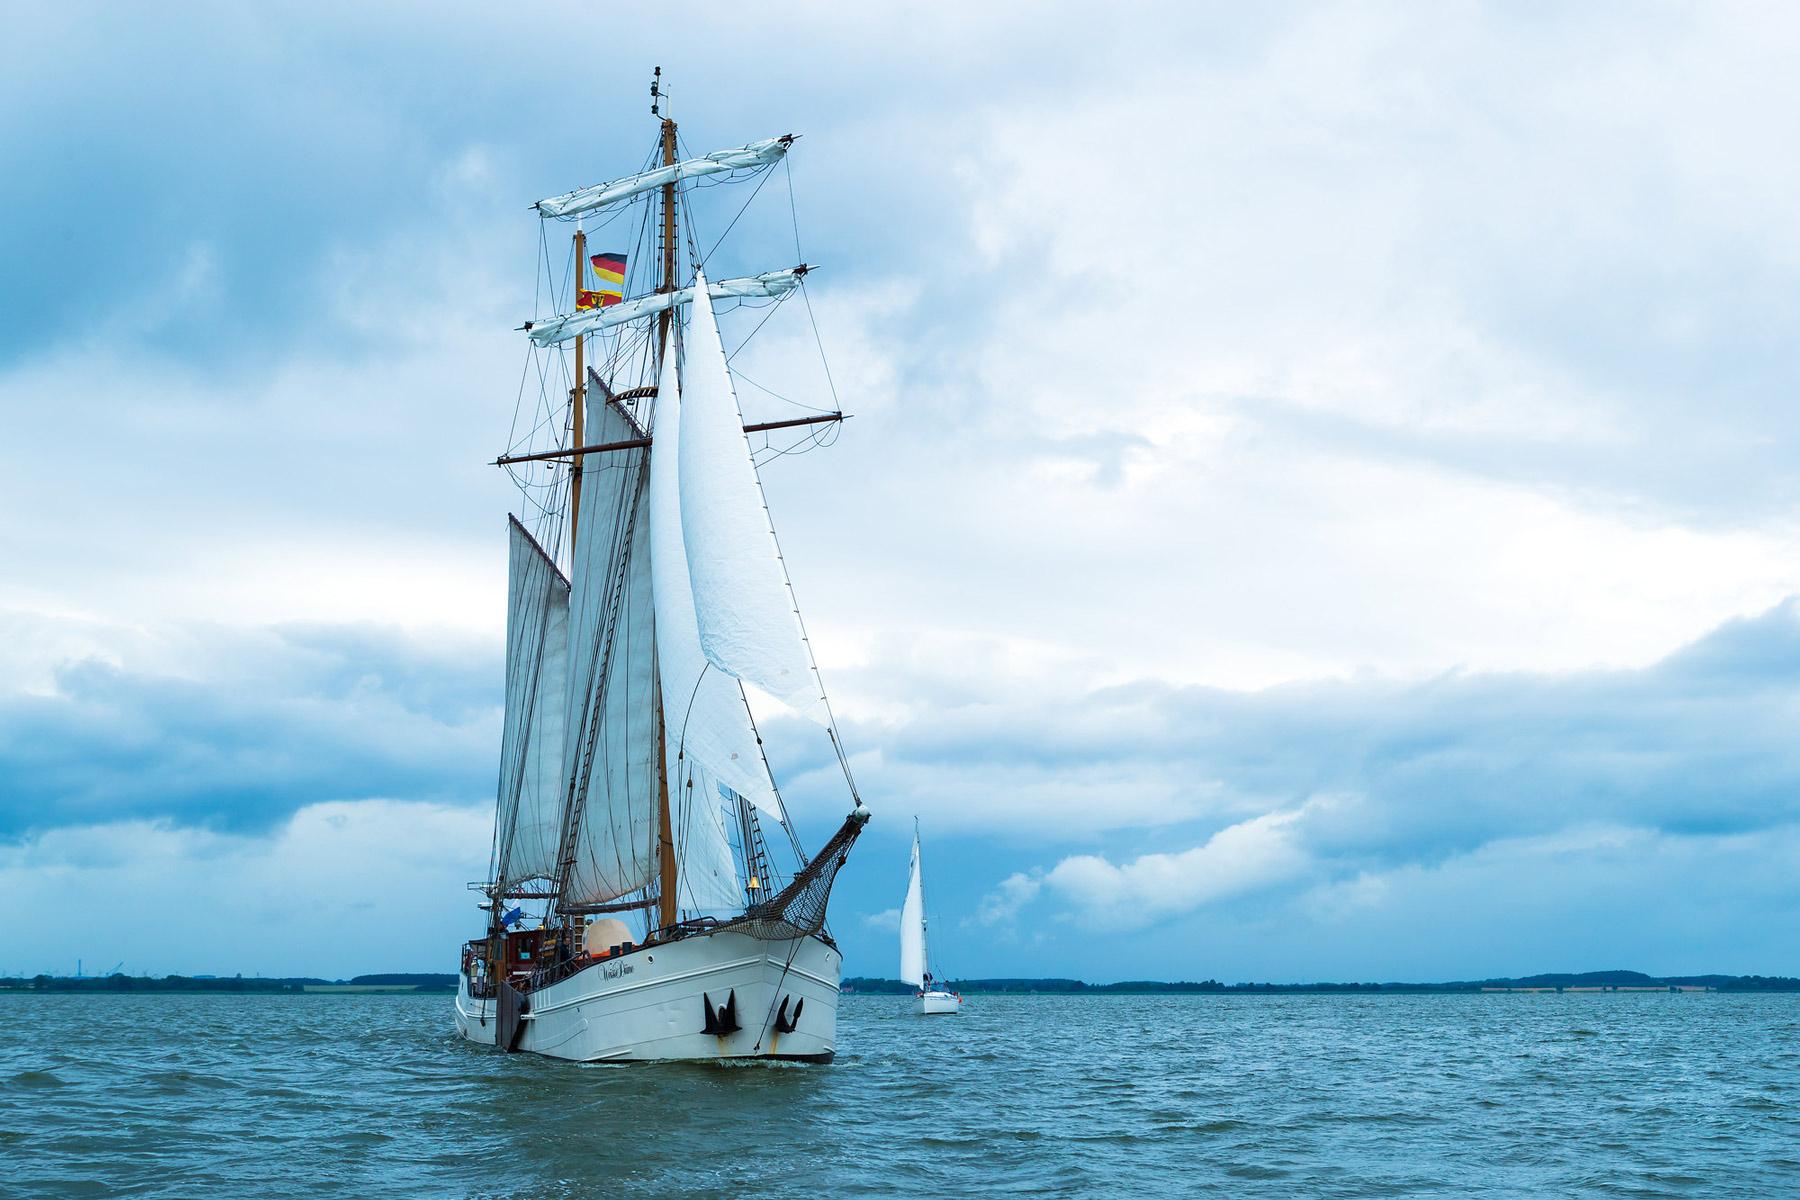 Segelschiff "Weisse Düne" auf dem Wasser